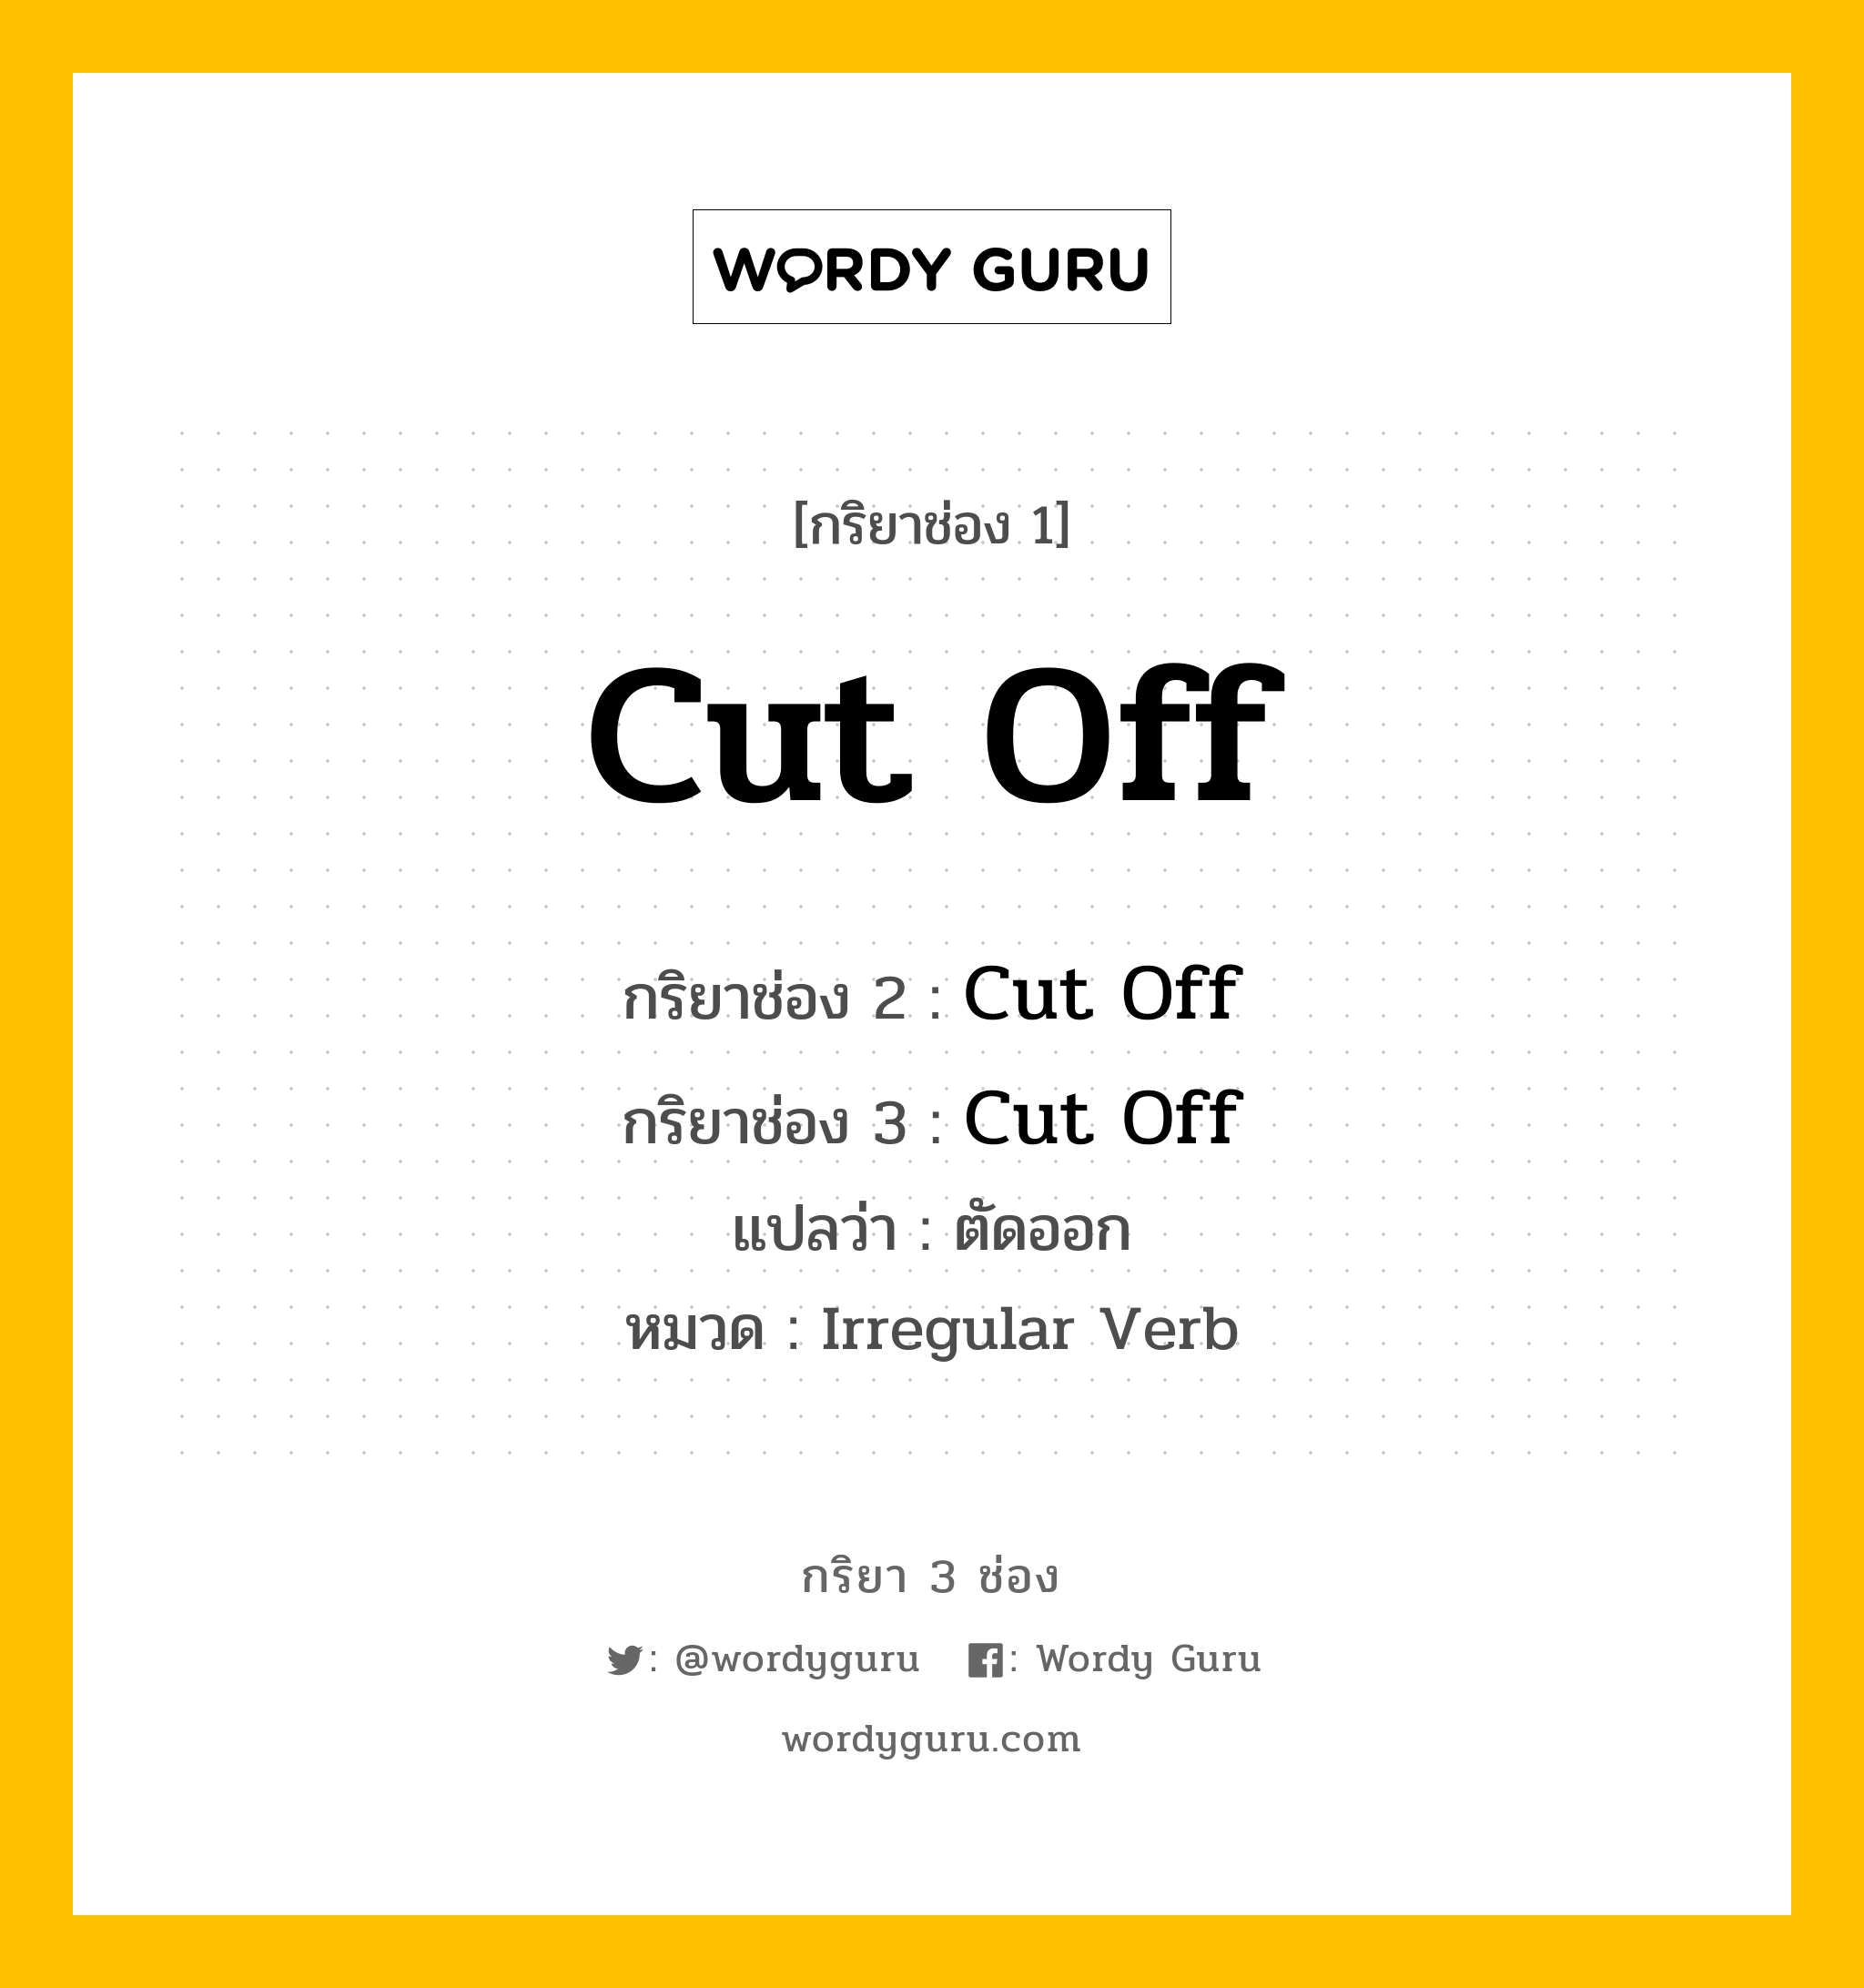 กริยา 3 ช่อง: Cut Off ช่อง 2 Cut Off ช่อง 3 คืออะไร, กริยาช่อง 1 Cut Off กริยาช่อง 2 Cut Off กริยาช่อง 3 Cut Off แปลว่า ตัดออก หมวด Irregular Verb หมวด Irregular Verb